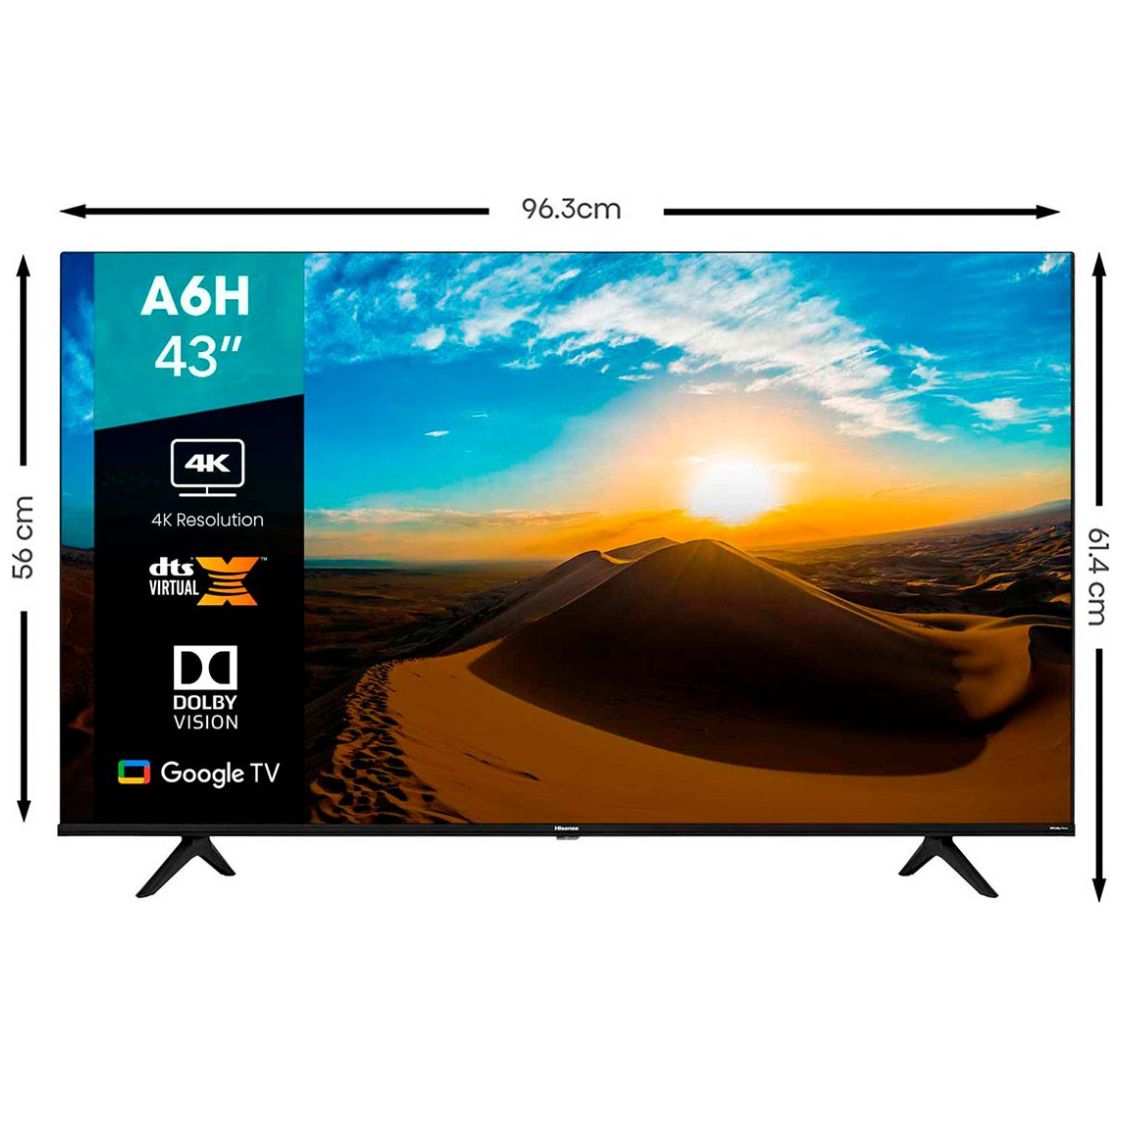 Hisense - Televisión Smart 43A6H serie A6, de 43 pulgadas, con resolución  4K UHD, con Google TV, control remoto de voz, Dolby Vision HDR, DTS Virtual